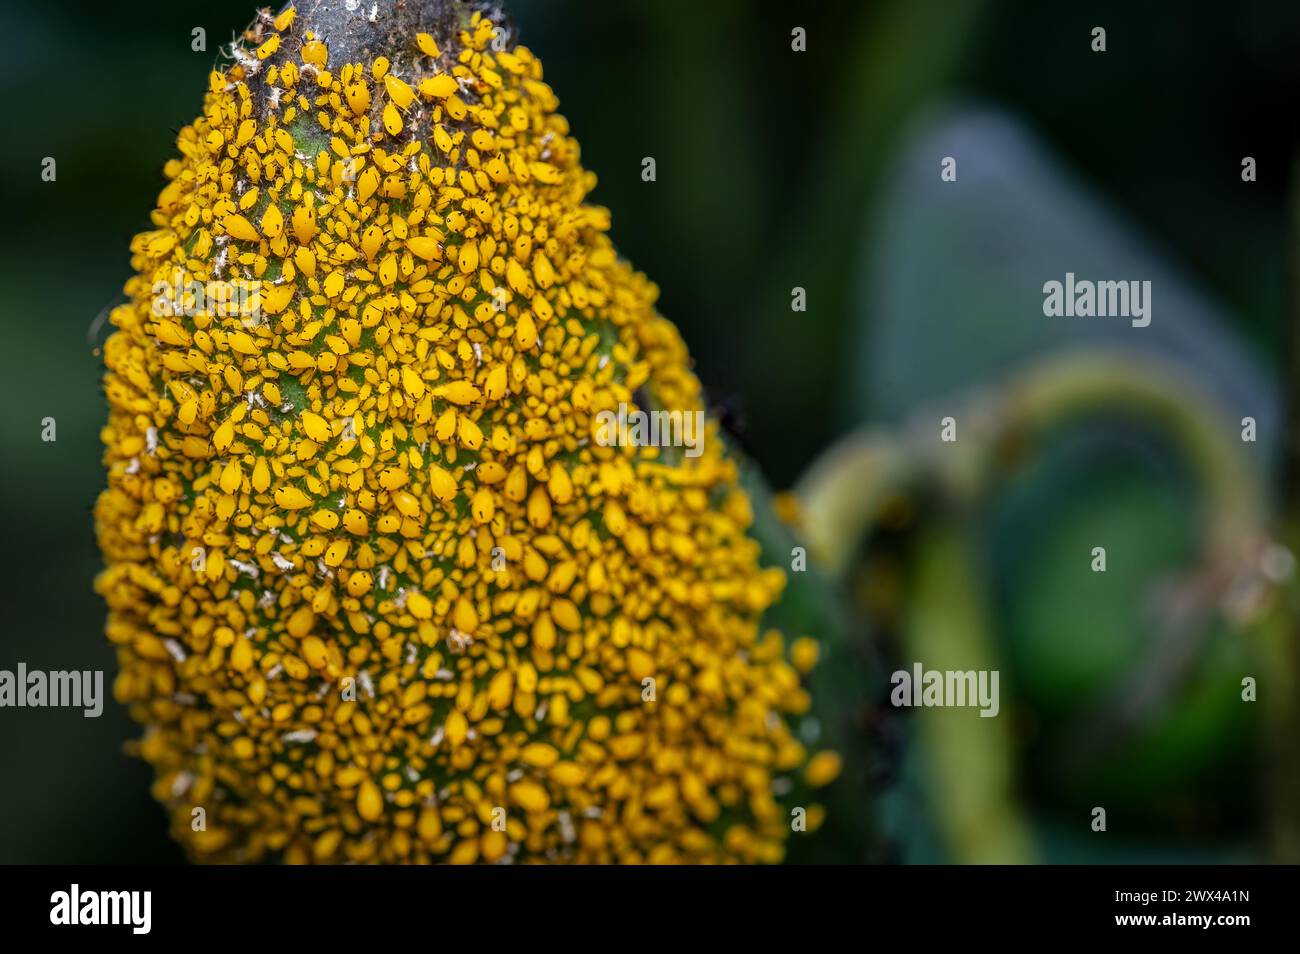 Nahaufnahme von gelben Blattläusen, die auf der Frucht von Calotropis gigantea schwärmen. Dies sind die Saugschädlinge, die für Agrar- und Gartenpflanzen schädlich sind. Stockfoto